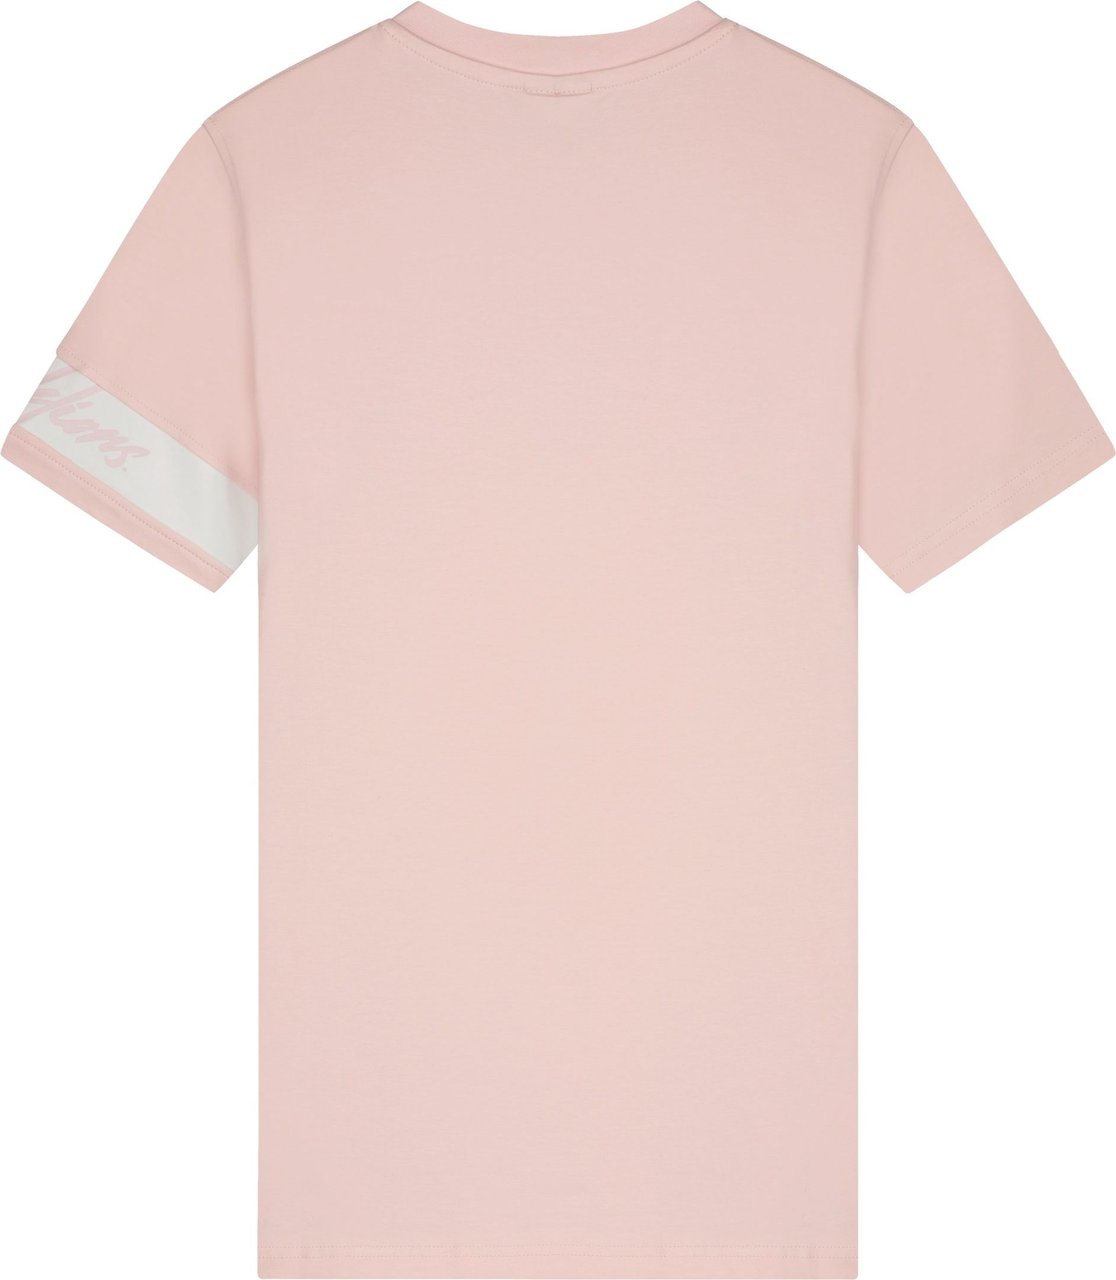 Malelions Captain T-Shirt - Pink Roze